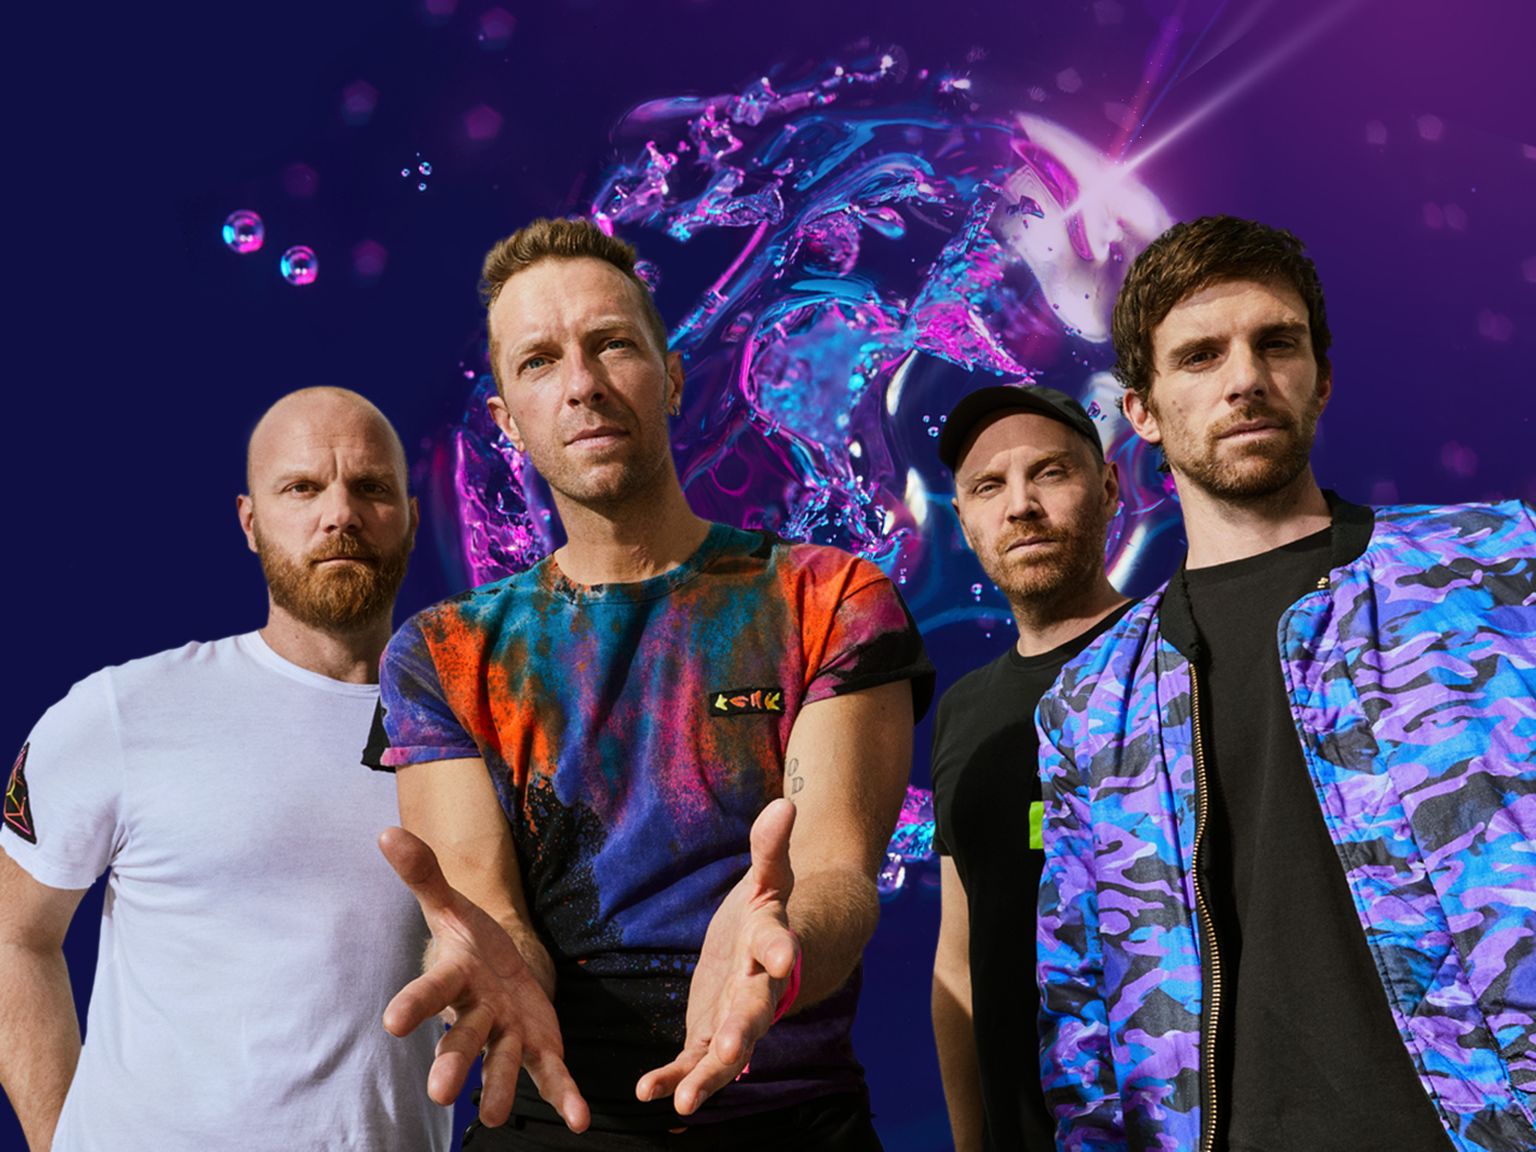 Coldplay sõlmis koostöö Nestega, et vähendada turnee „Music Of The Spheres World Tour“ CO2 heitkoguseid poole võrra võrreldes eelmise maailmaturneega.